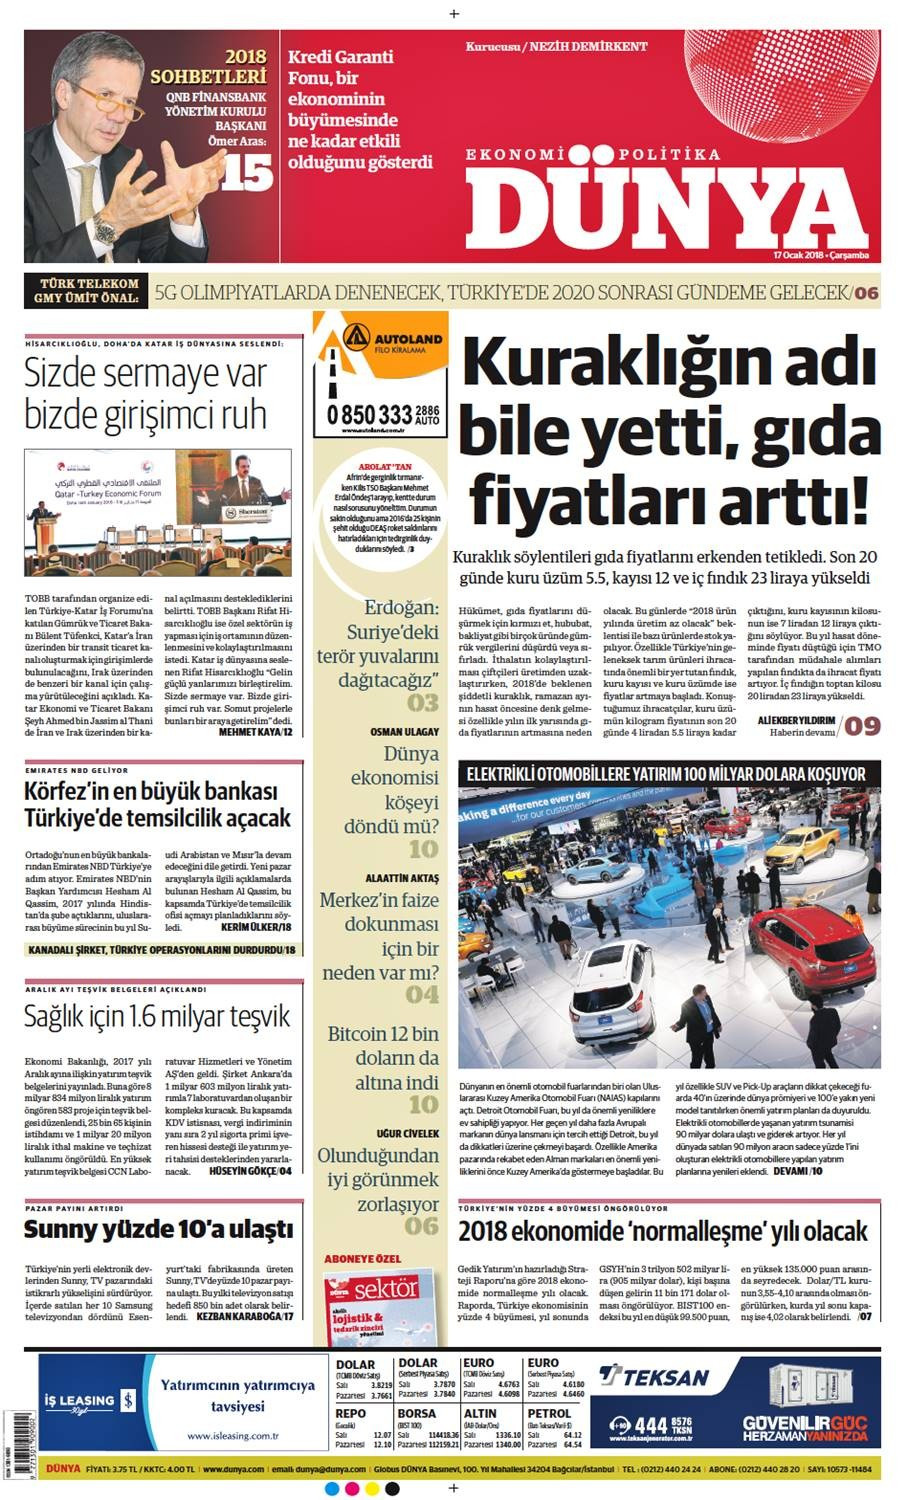 Günün gazete manşetleri (17 Ocak 2018) - Sayfa 1